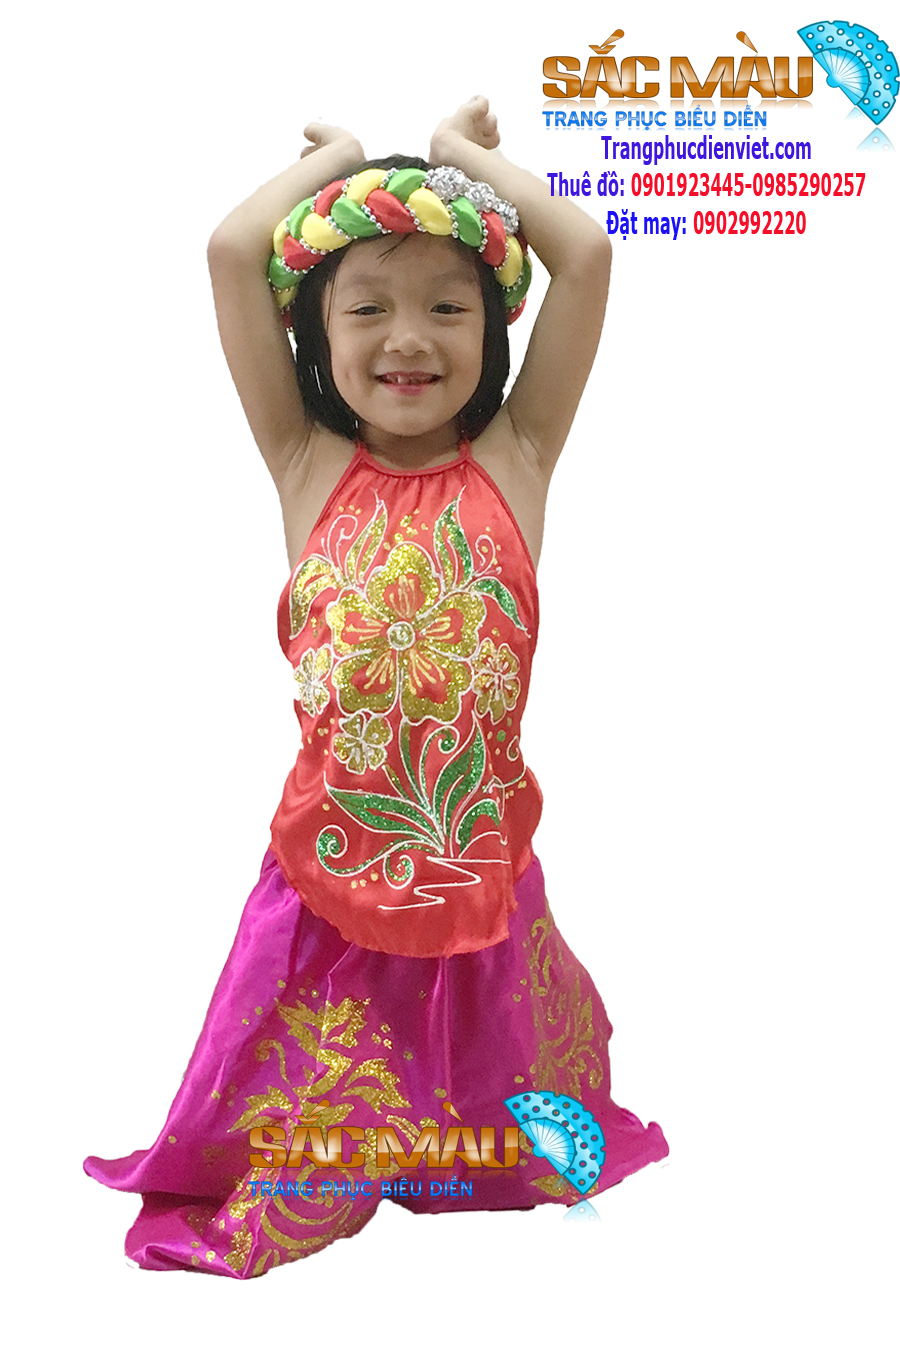 Váy  Yếm trẻ em  Trang phục biểu diễn Sắc Màu Quận 12